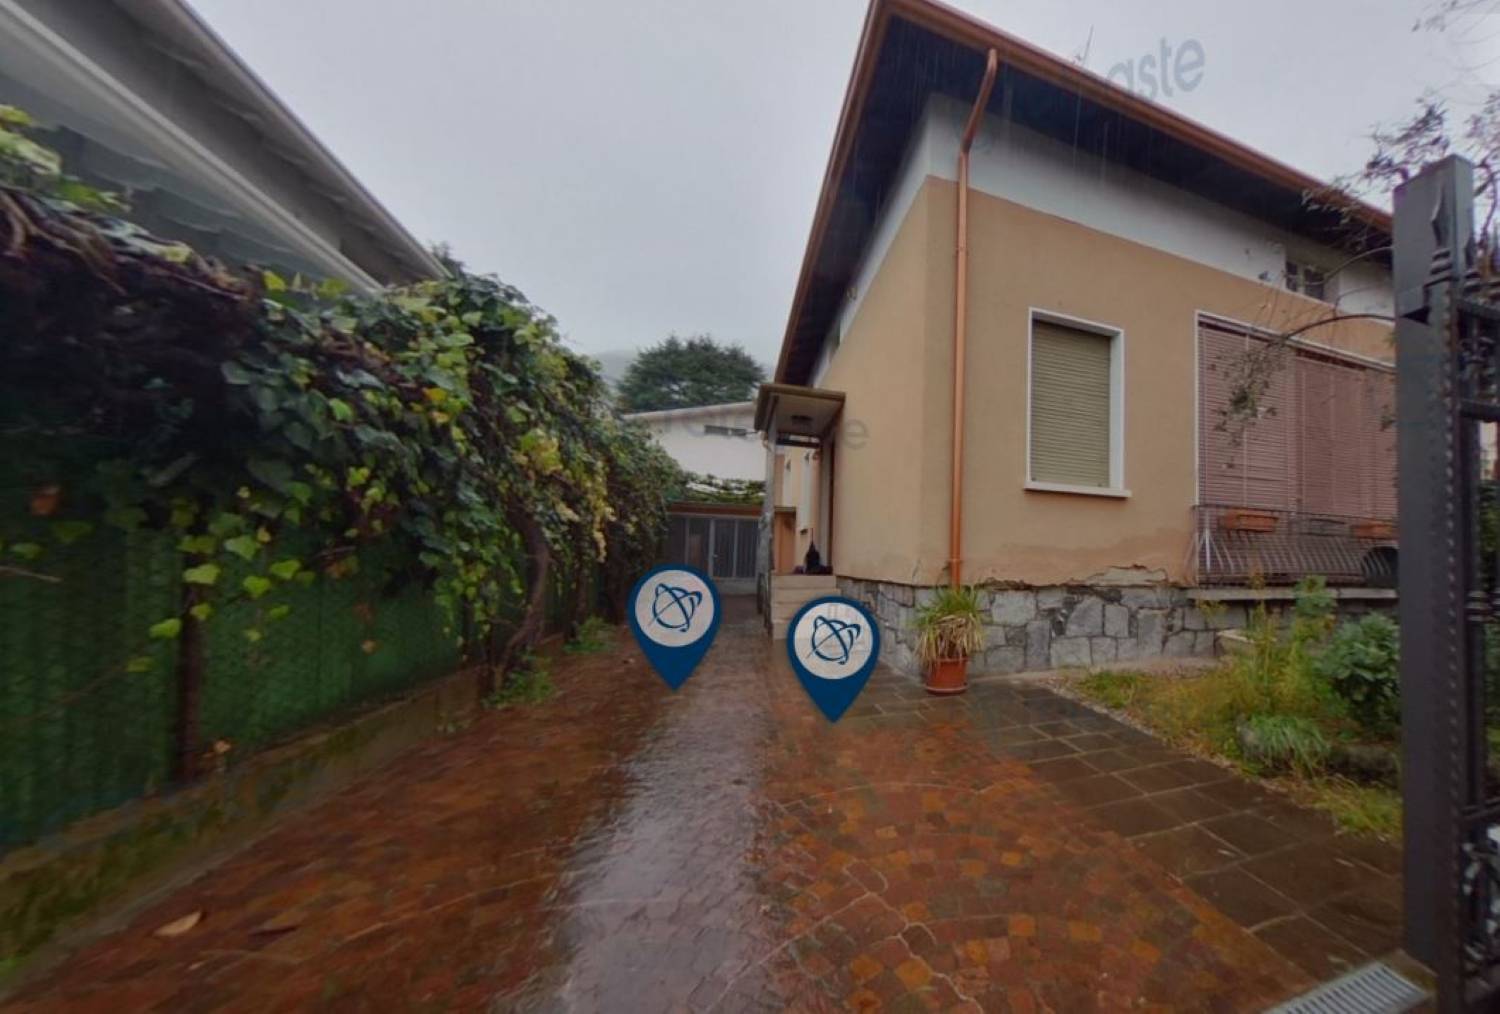 Villa Bifamiliare in vendita a Villanuova sul Clisi, 4 locali, prezzo € 78.000 | PortaleAgenzieImmobiliari.it